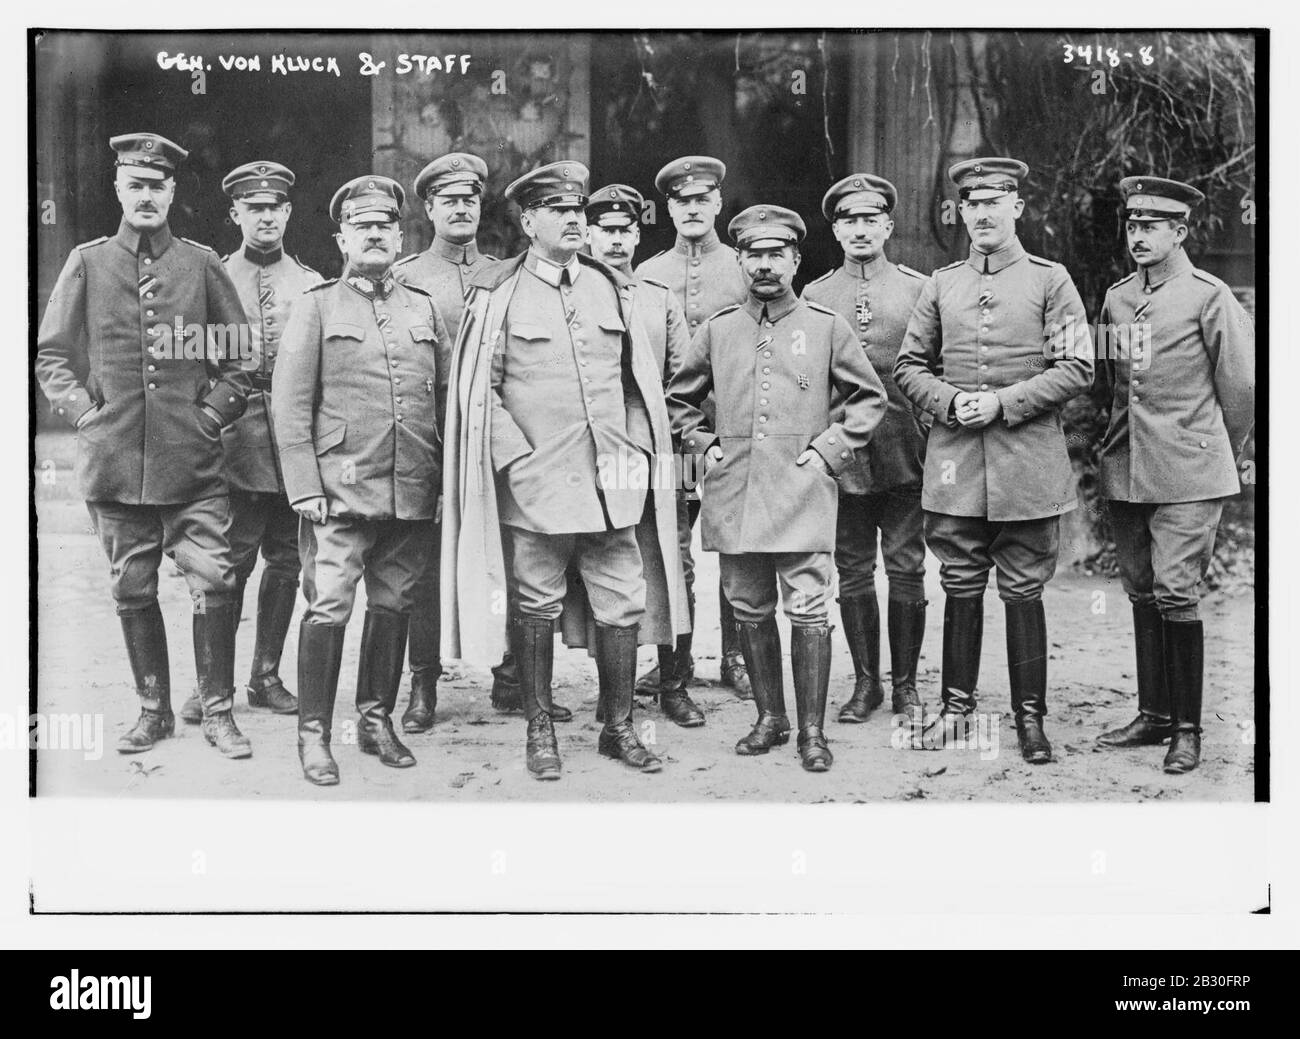 Gen. von Kluck and staff Stock Photo